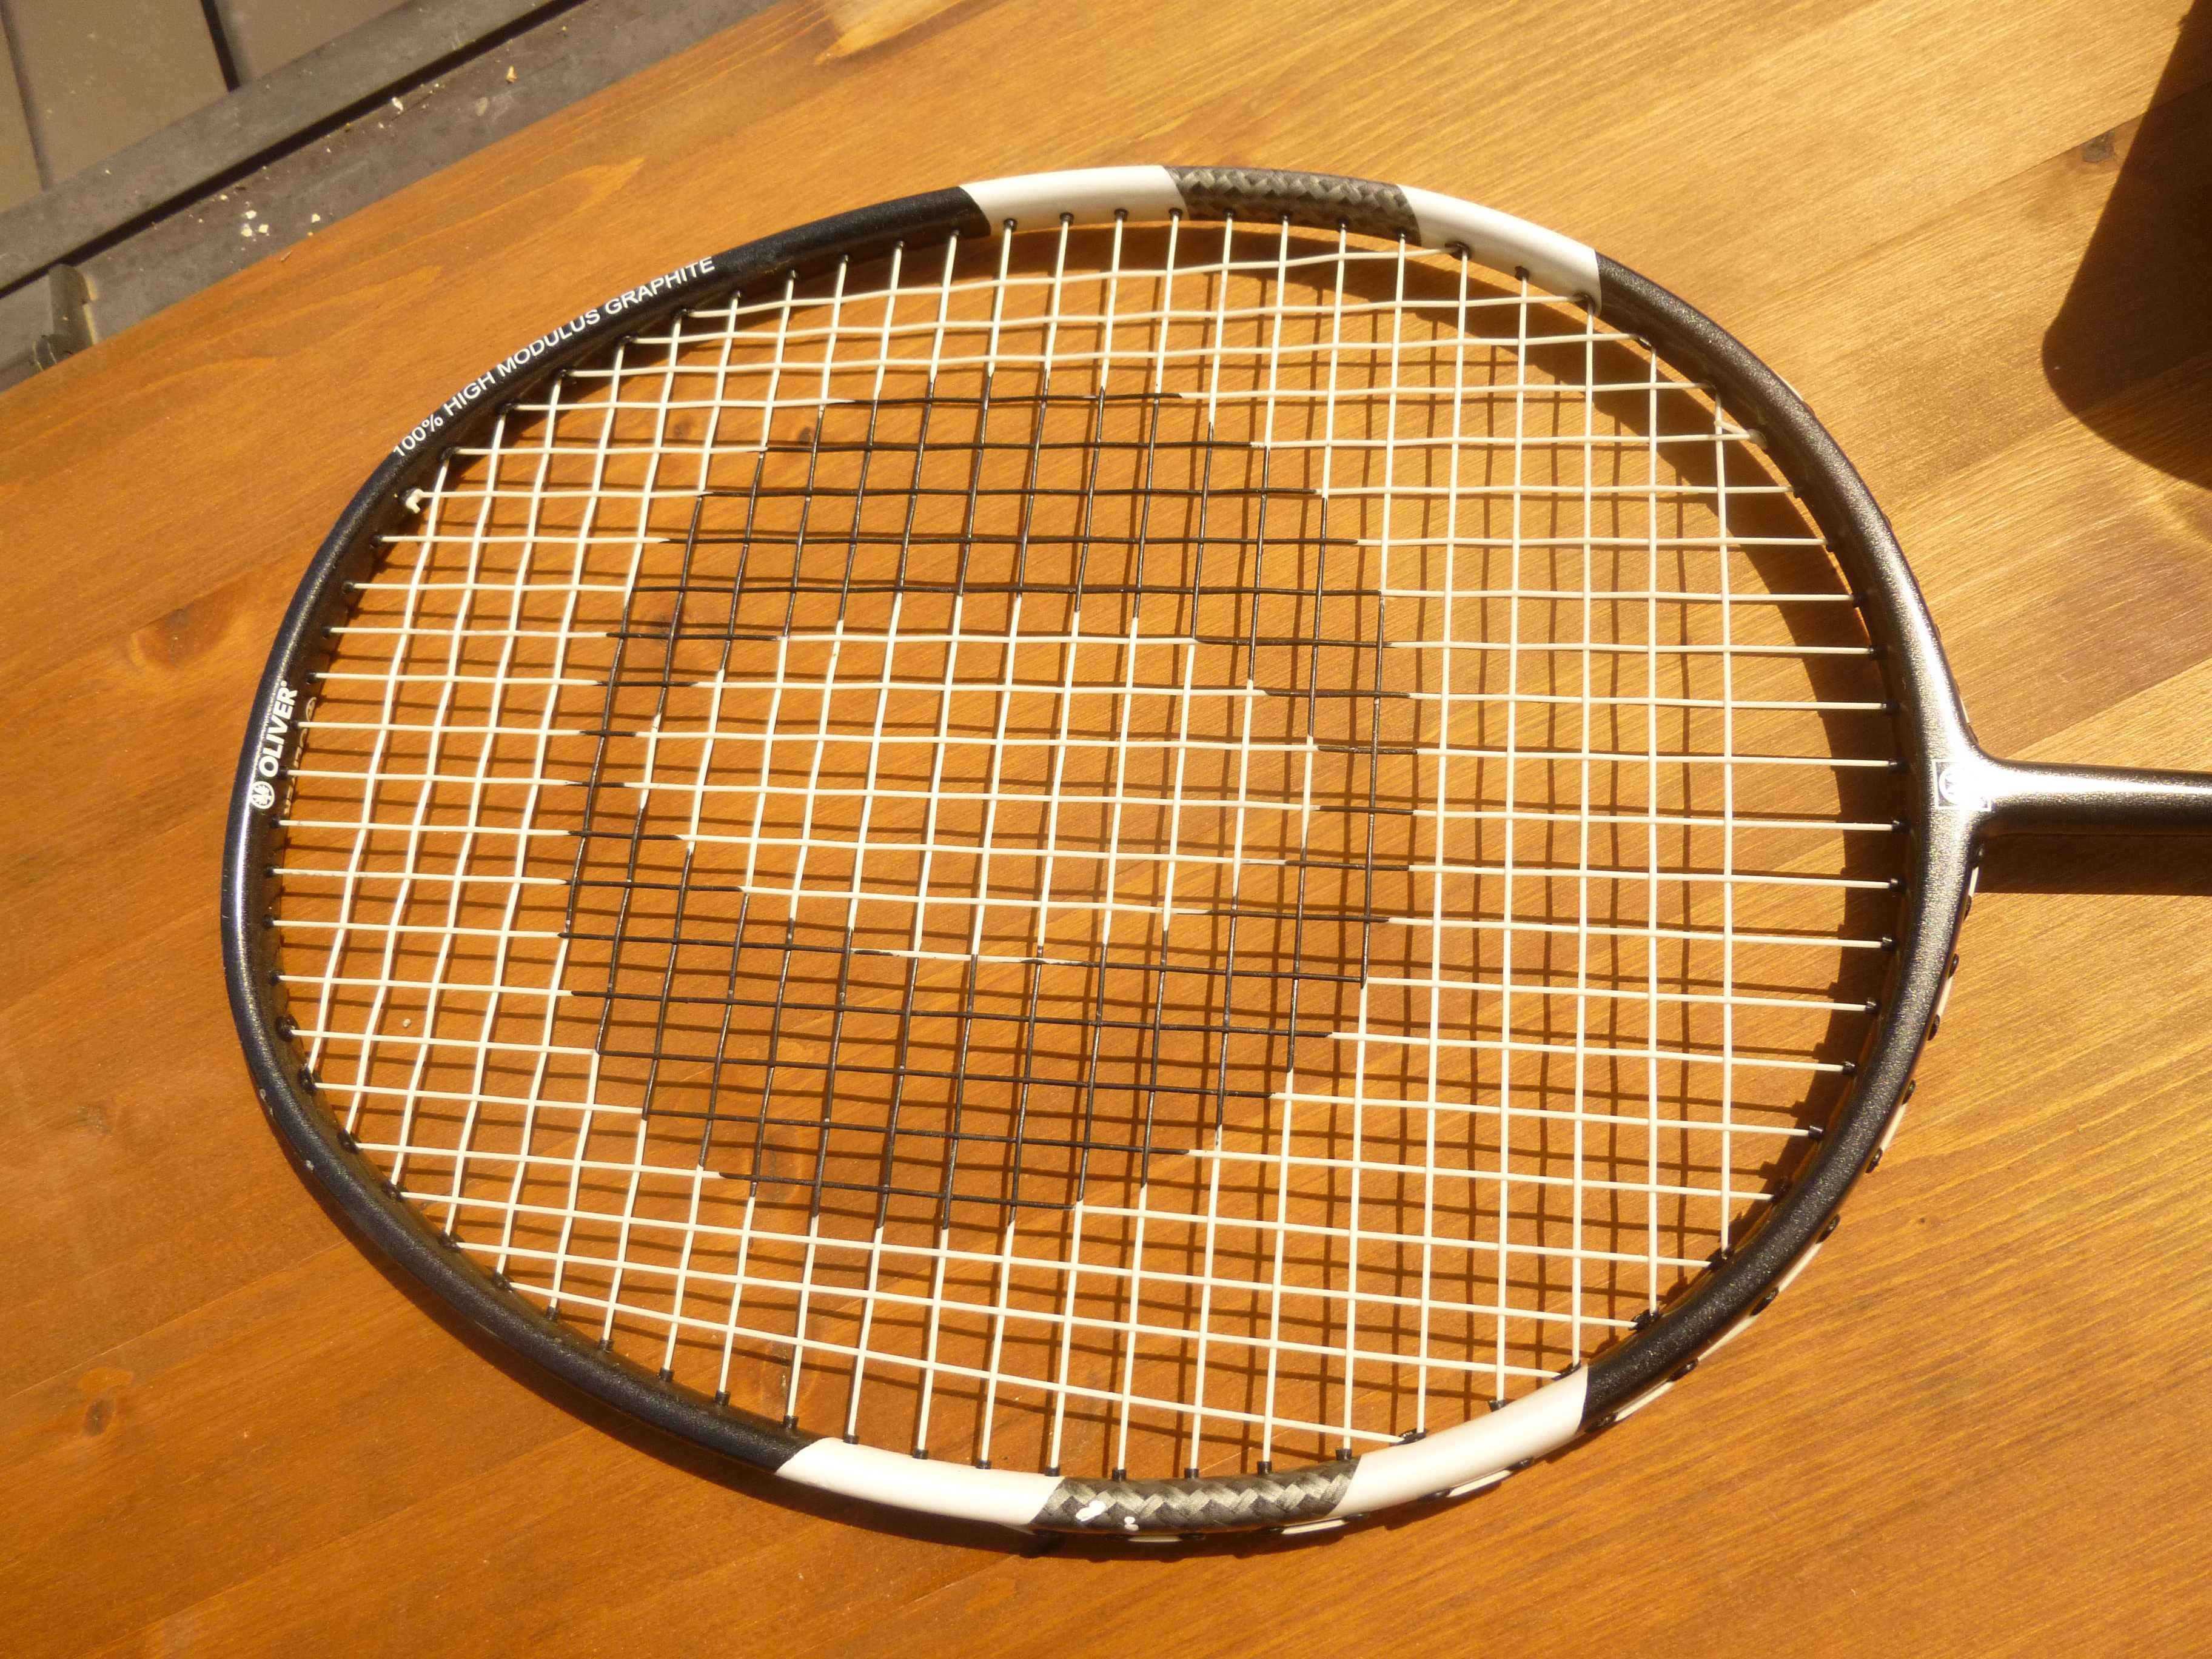 Raquete badminton com 36 volantes